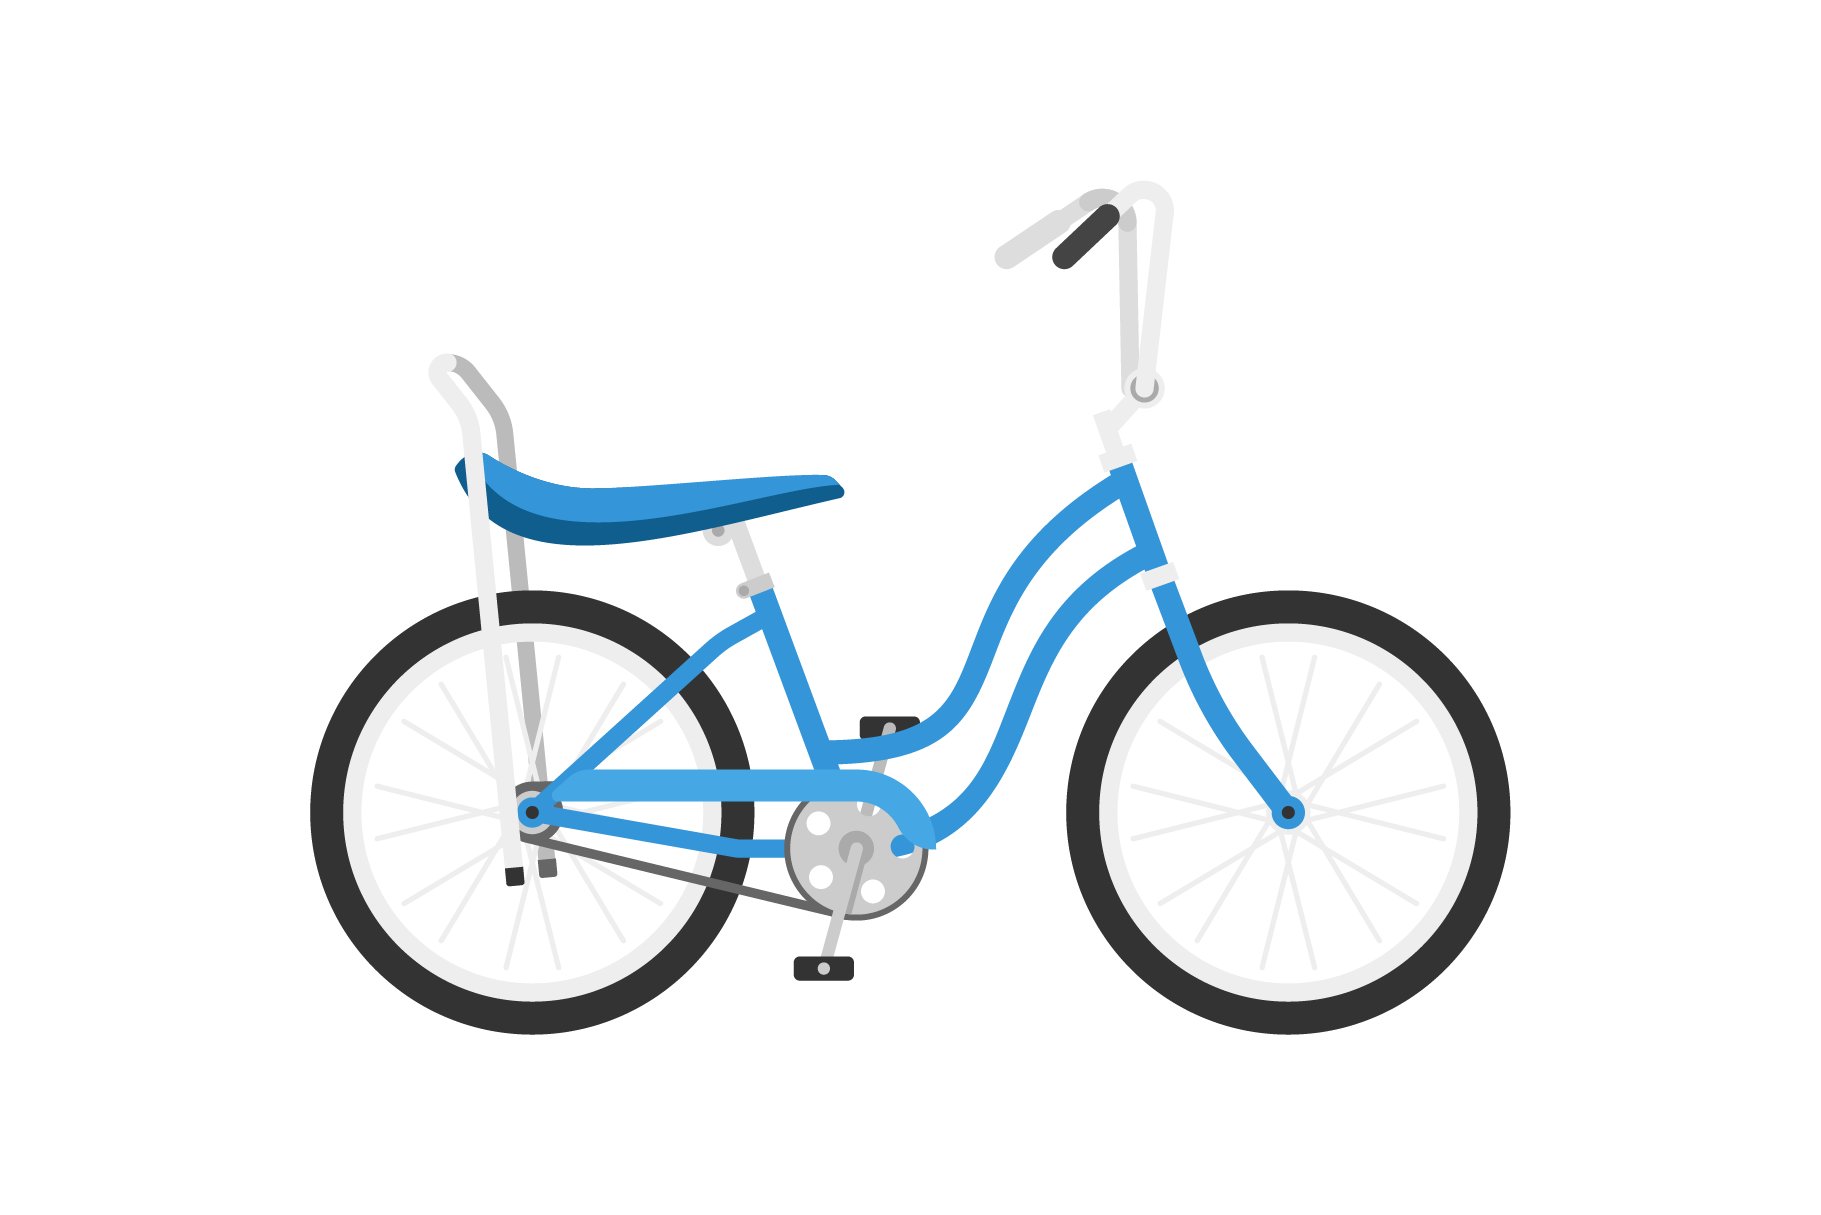 Retro blue bicycle.